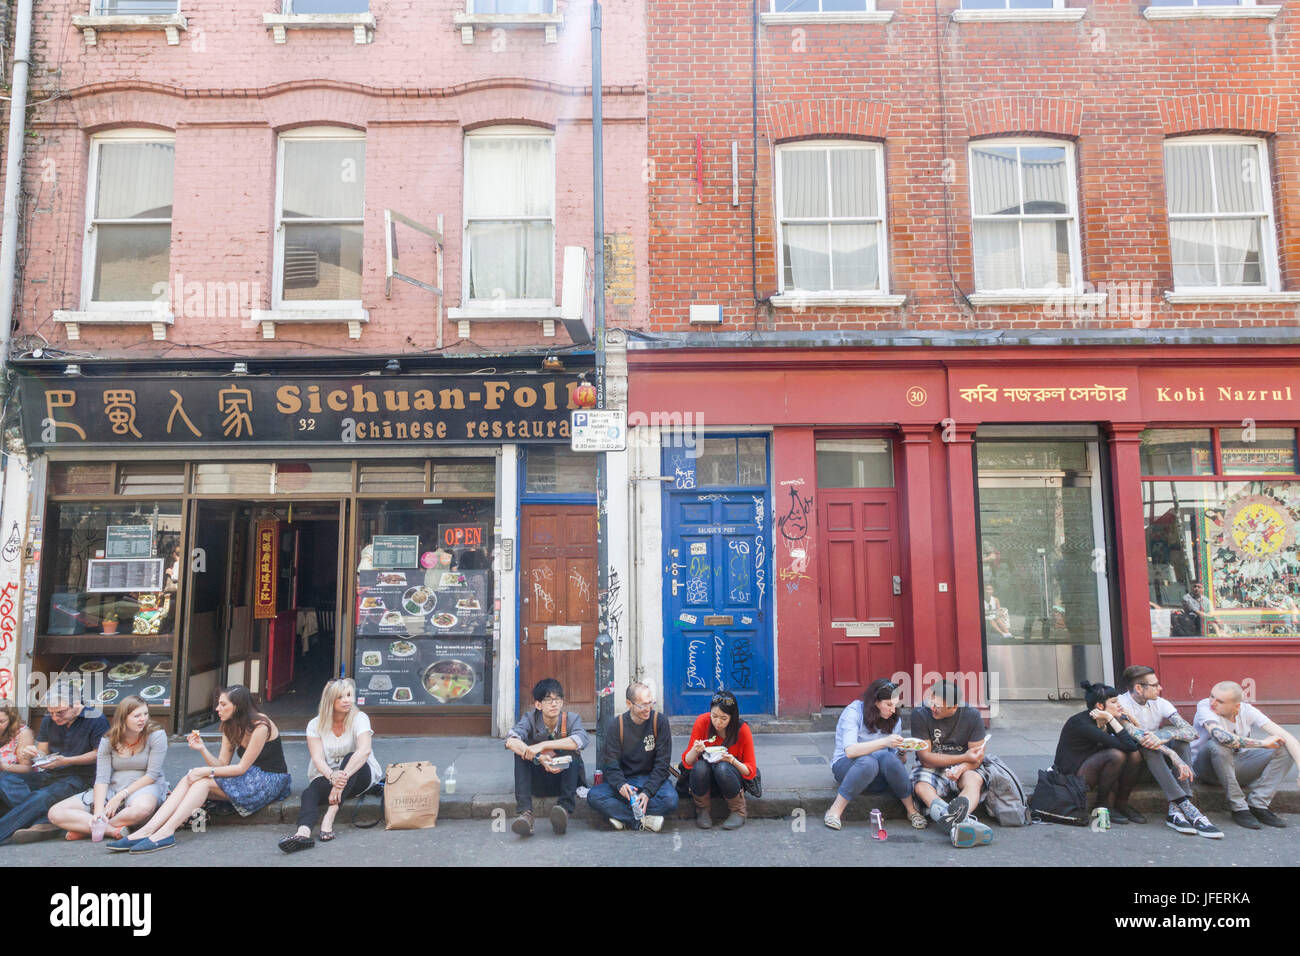 England, London, Tower Hamlets, Brick Lane, Brick Lane Market, People Eating Takeaway Food Stock Photo